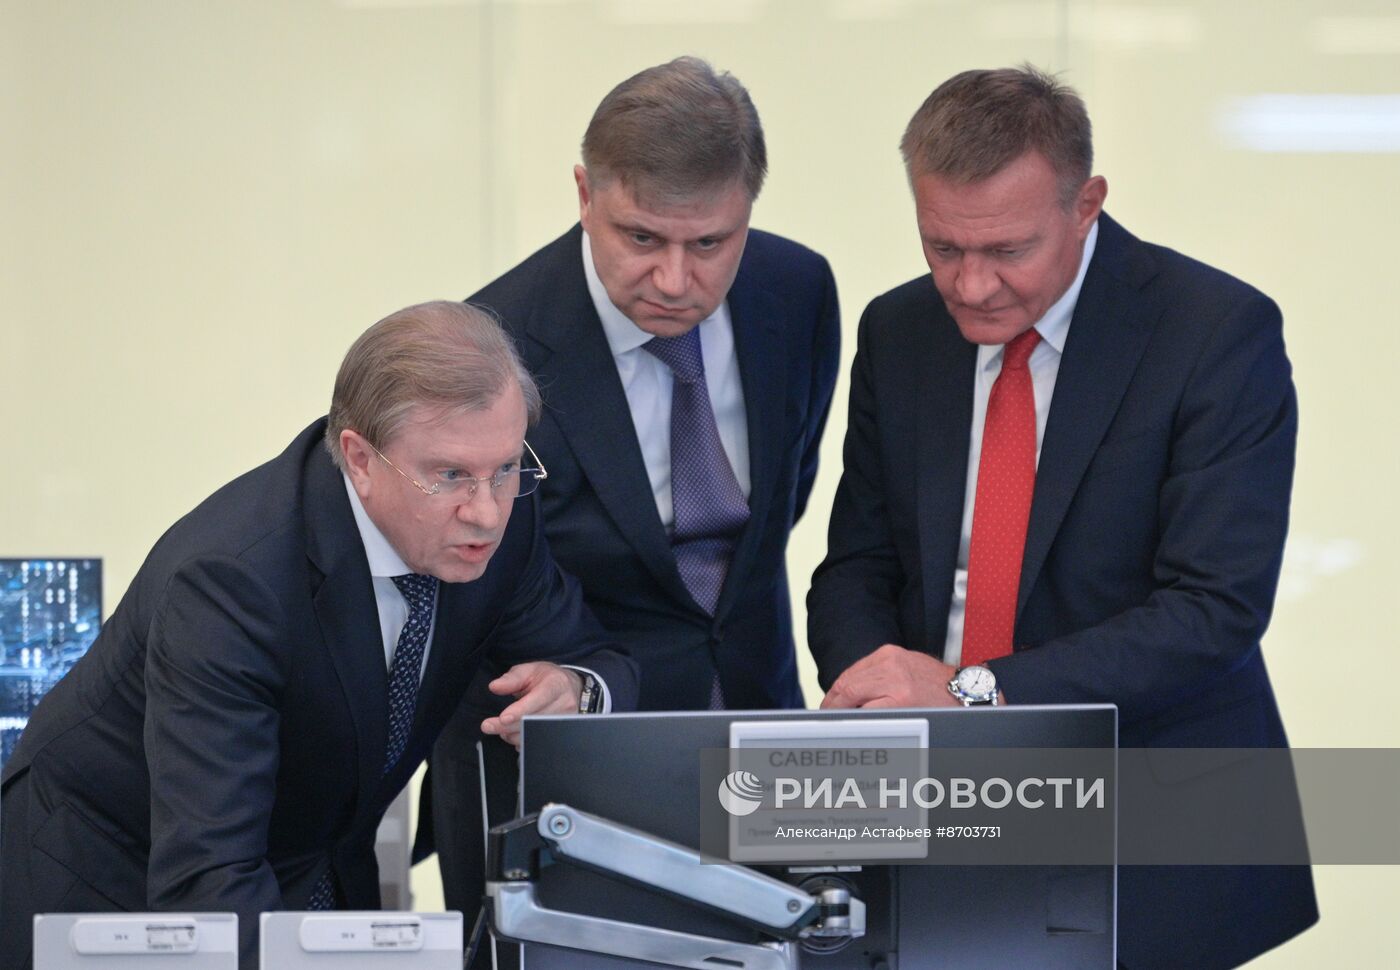 Премьер-министр Михаил Мишустин провел стратегические сессии по национальным проектам "Средства производства и автоматизации" и "Инфраструктура для жизни"